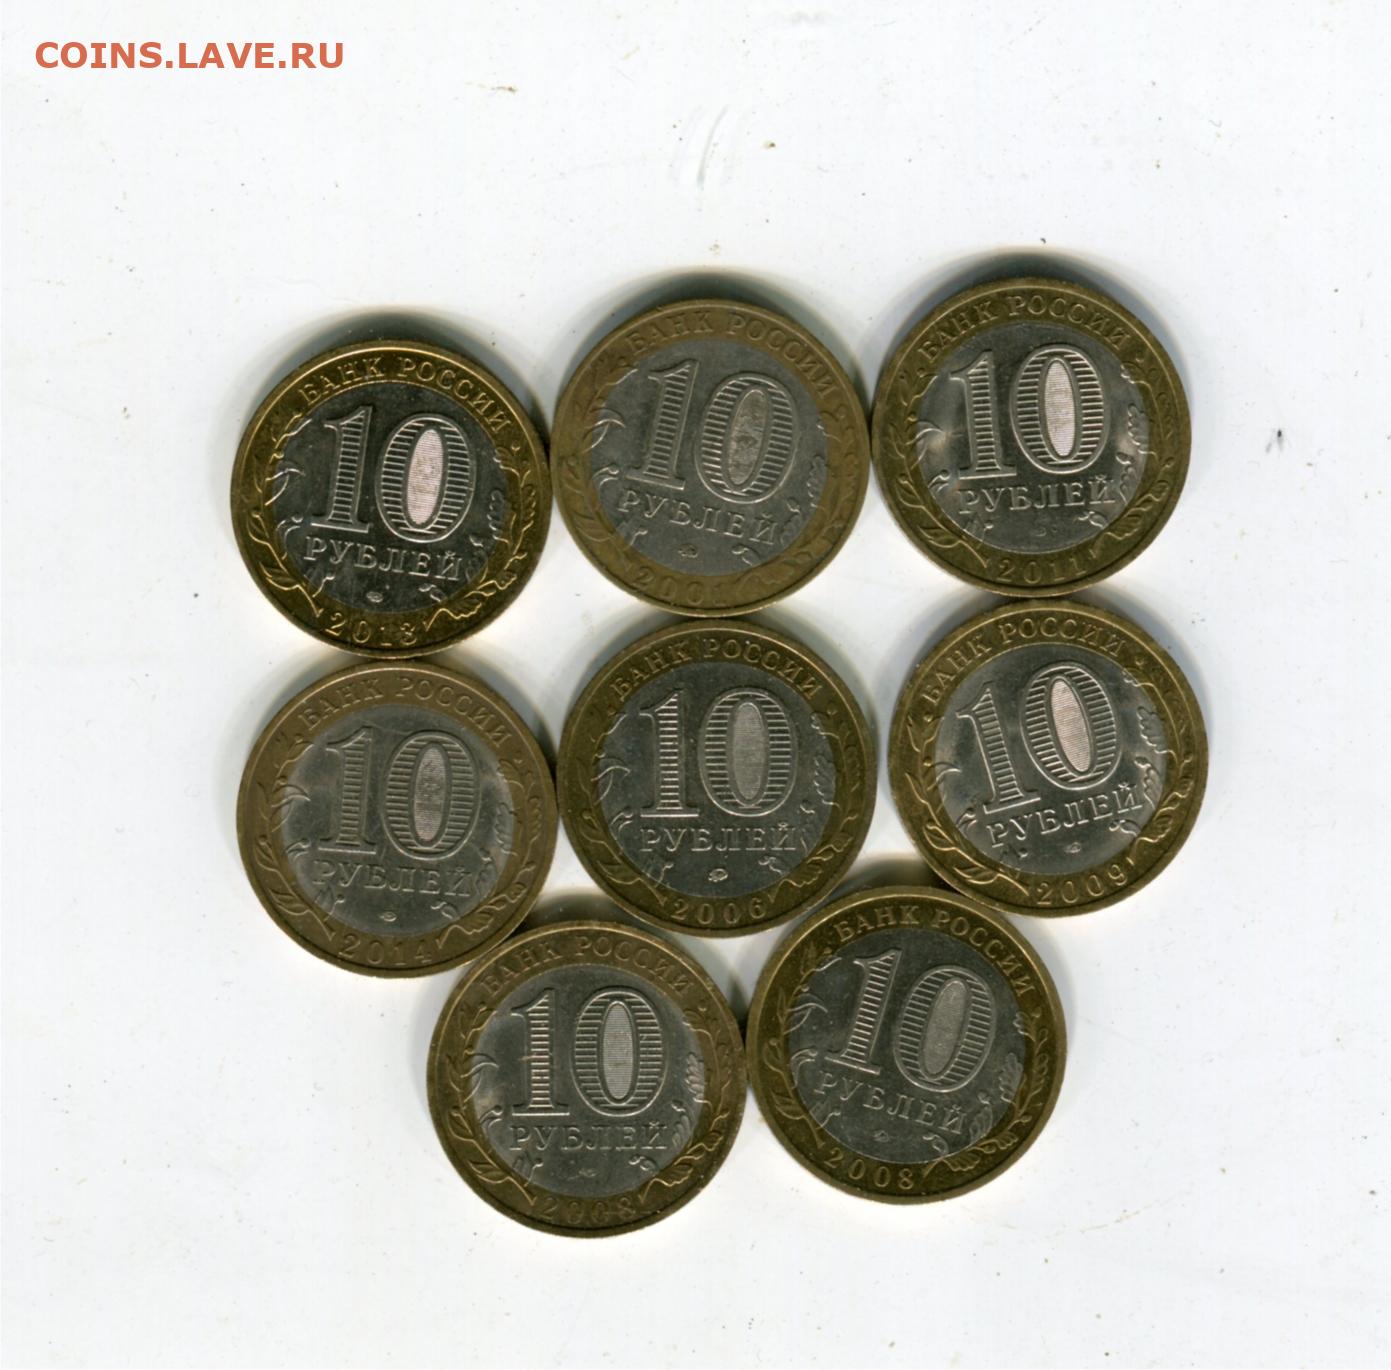 8 Монет. 10 Рублей Бим ХМАО. Как из 8 монет сделать 10. 8 монет в операции